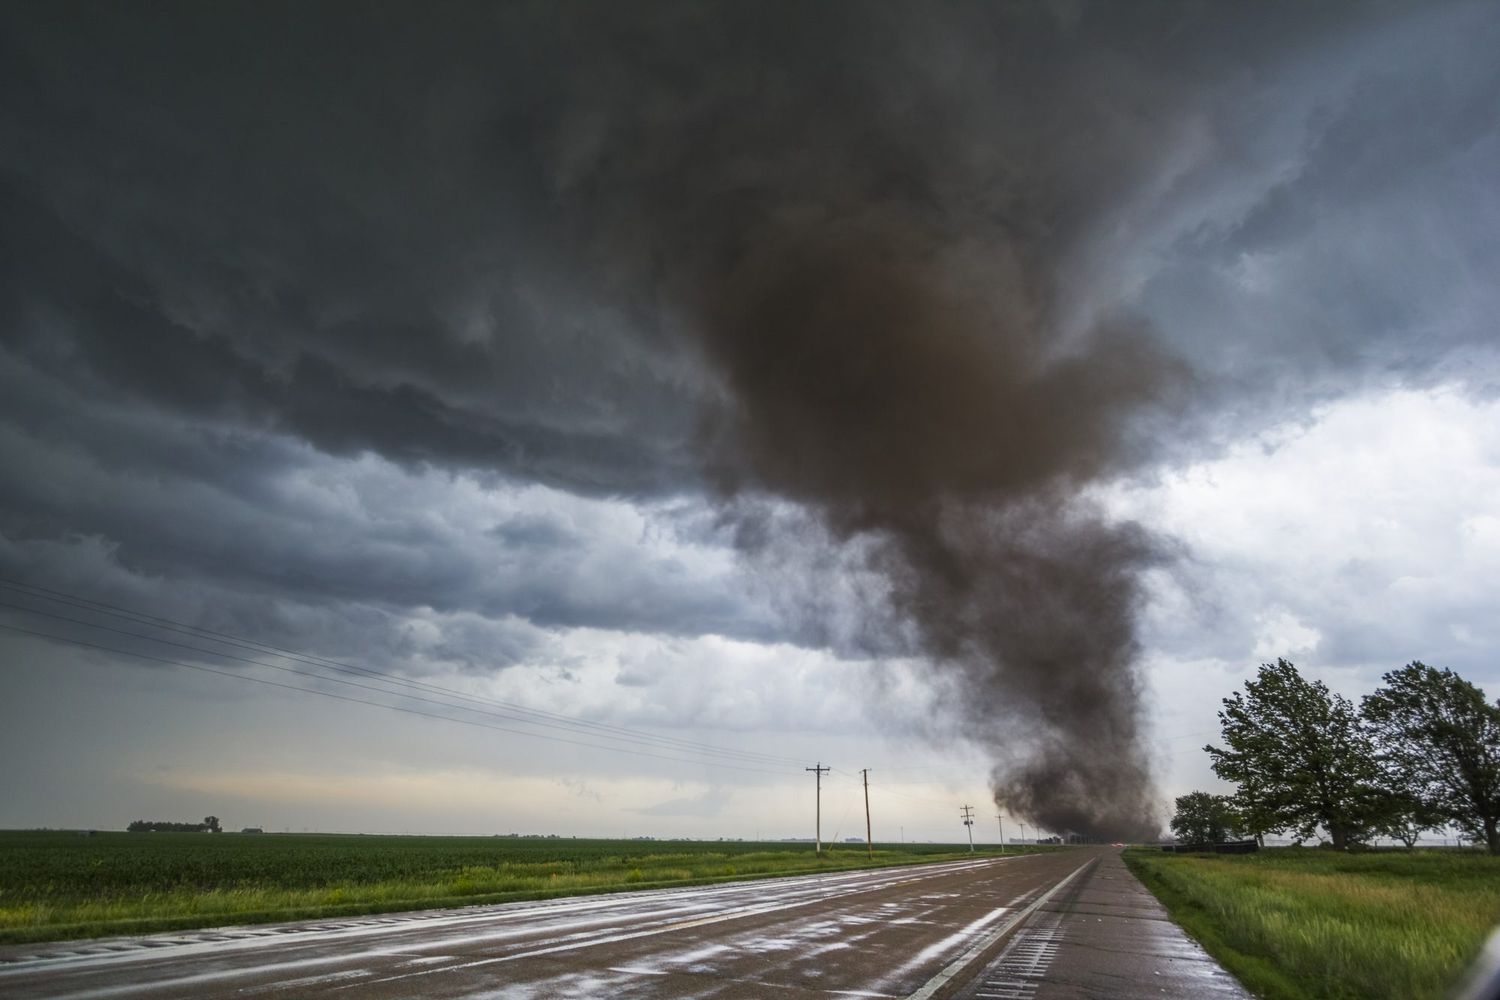 Apocalisse in Texas, tornado causa danni catastrofici. Cosa sta accadendo negli Usa